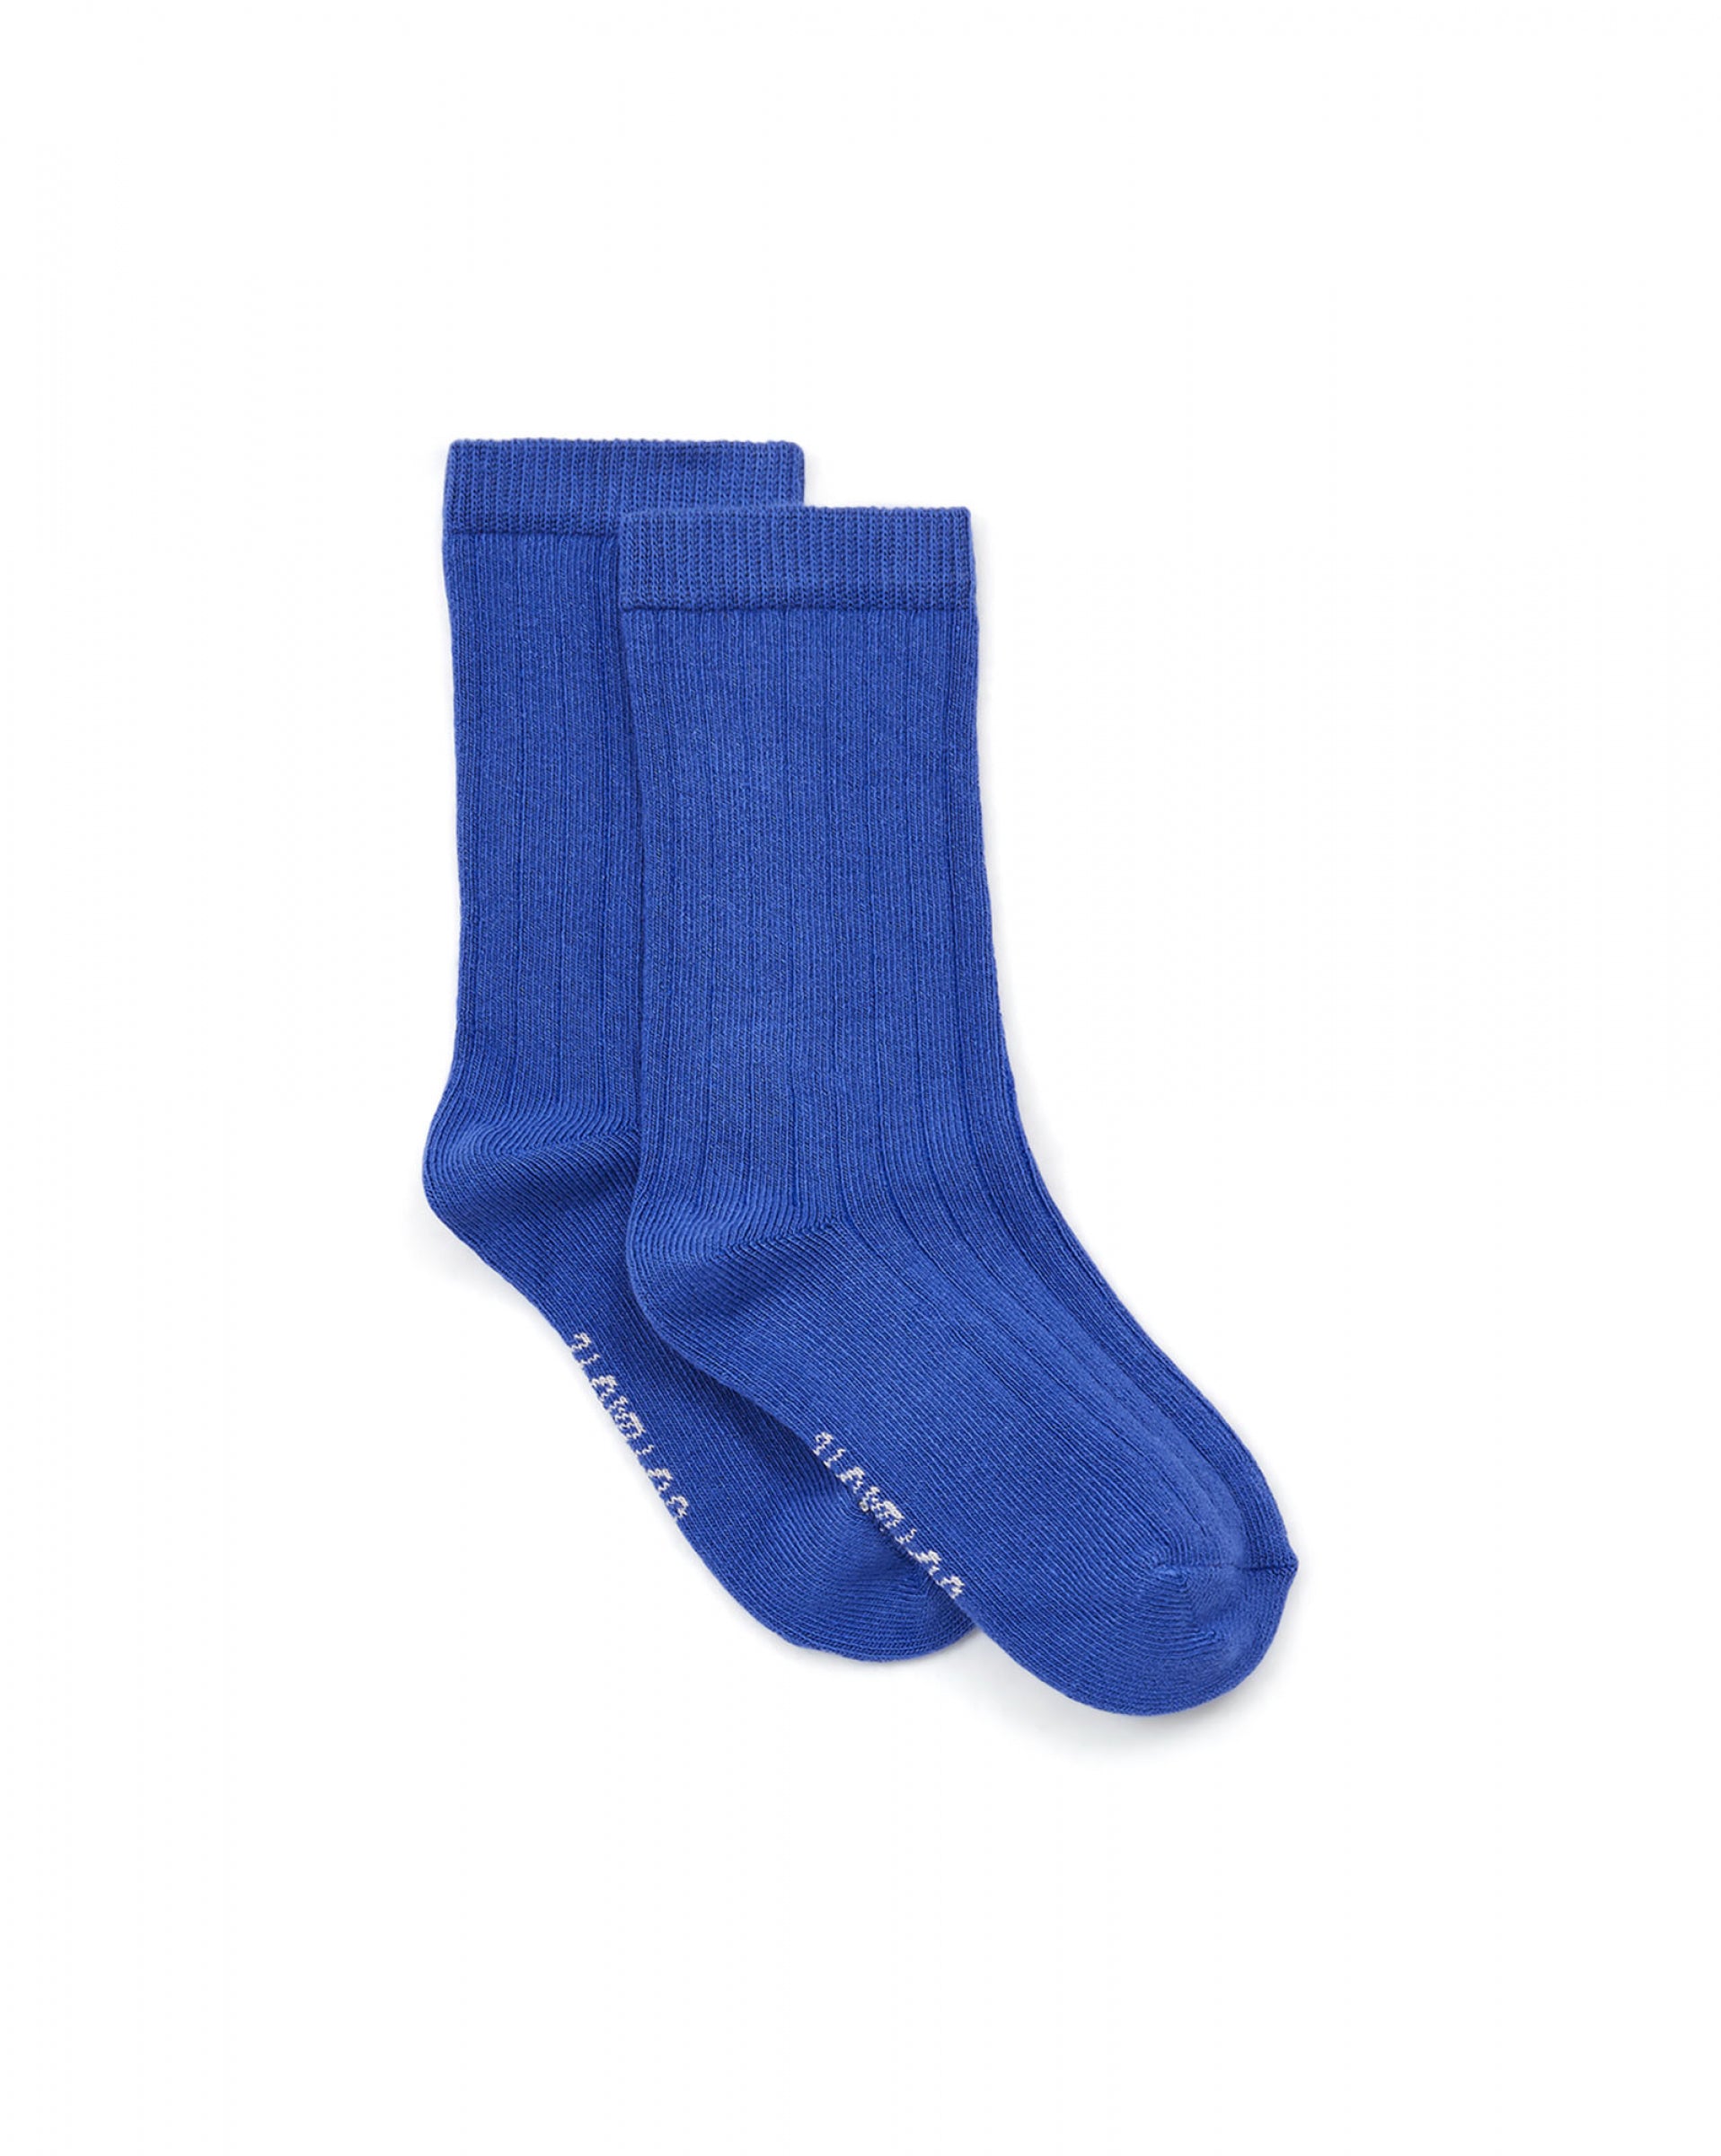 Boys & Girls Blue Socks